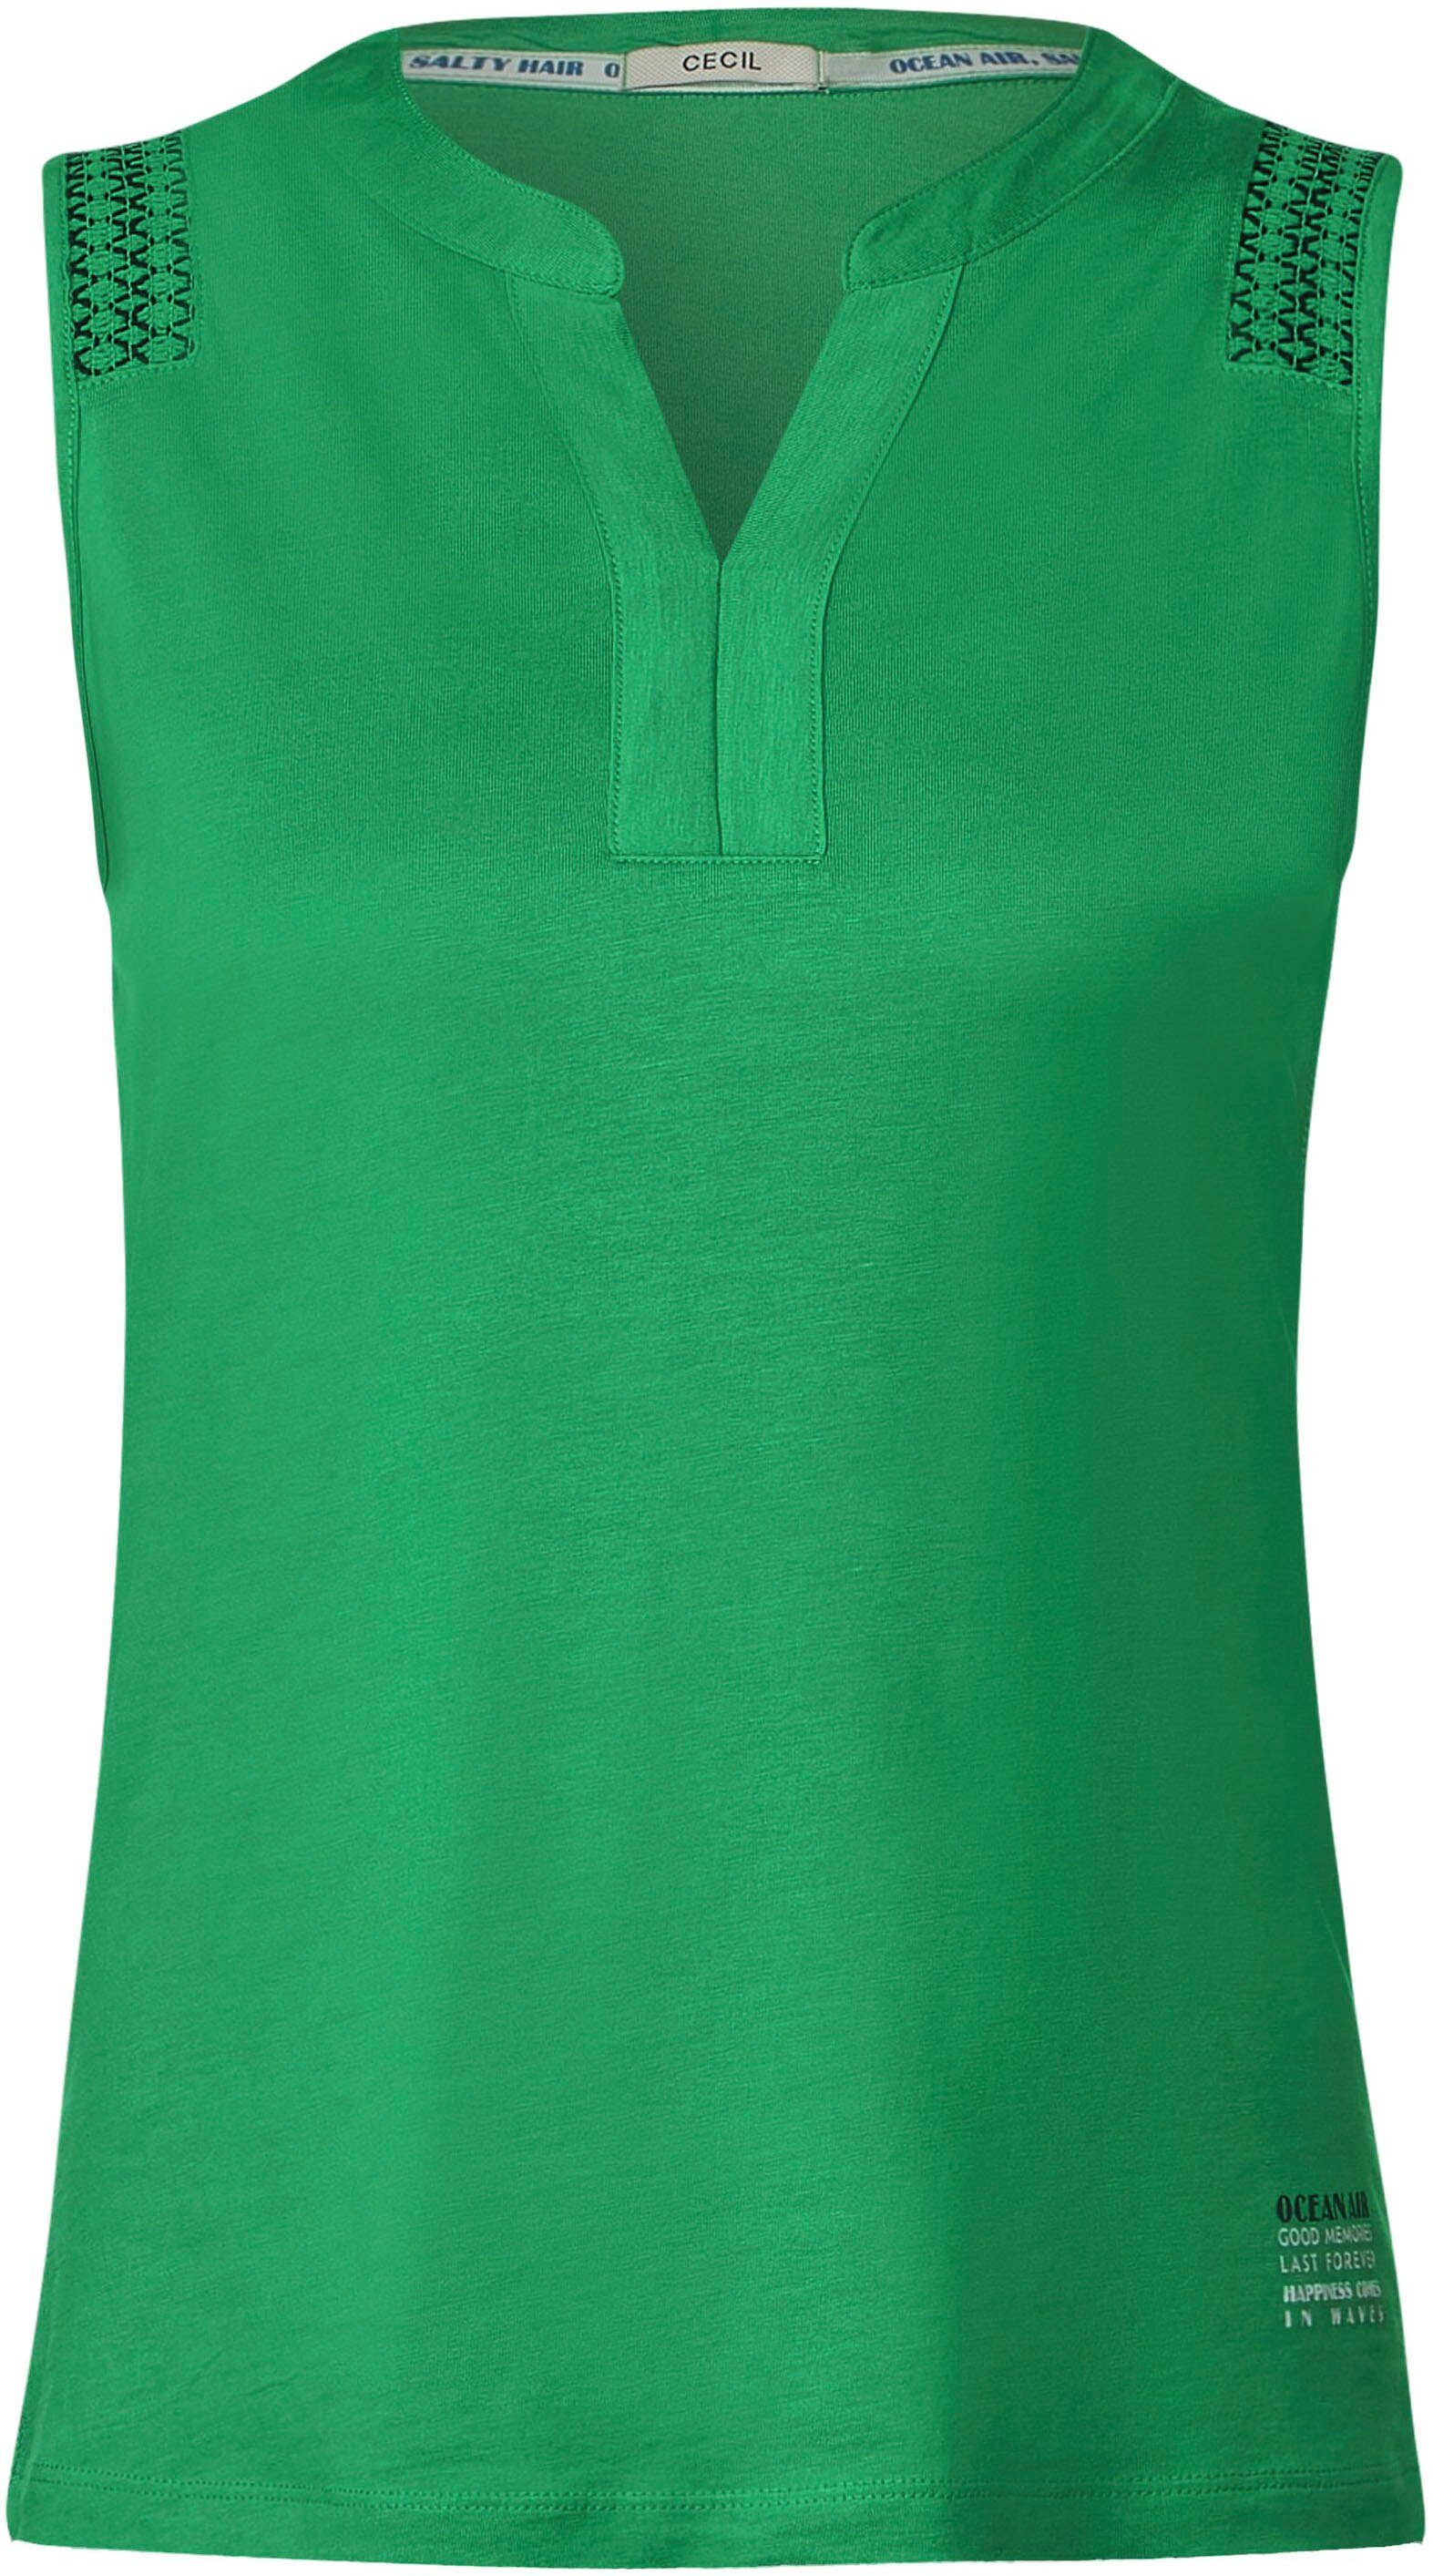 Shirttop green Motto-Druck fresh Rumpfabschluss am Cecil mit